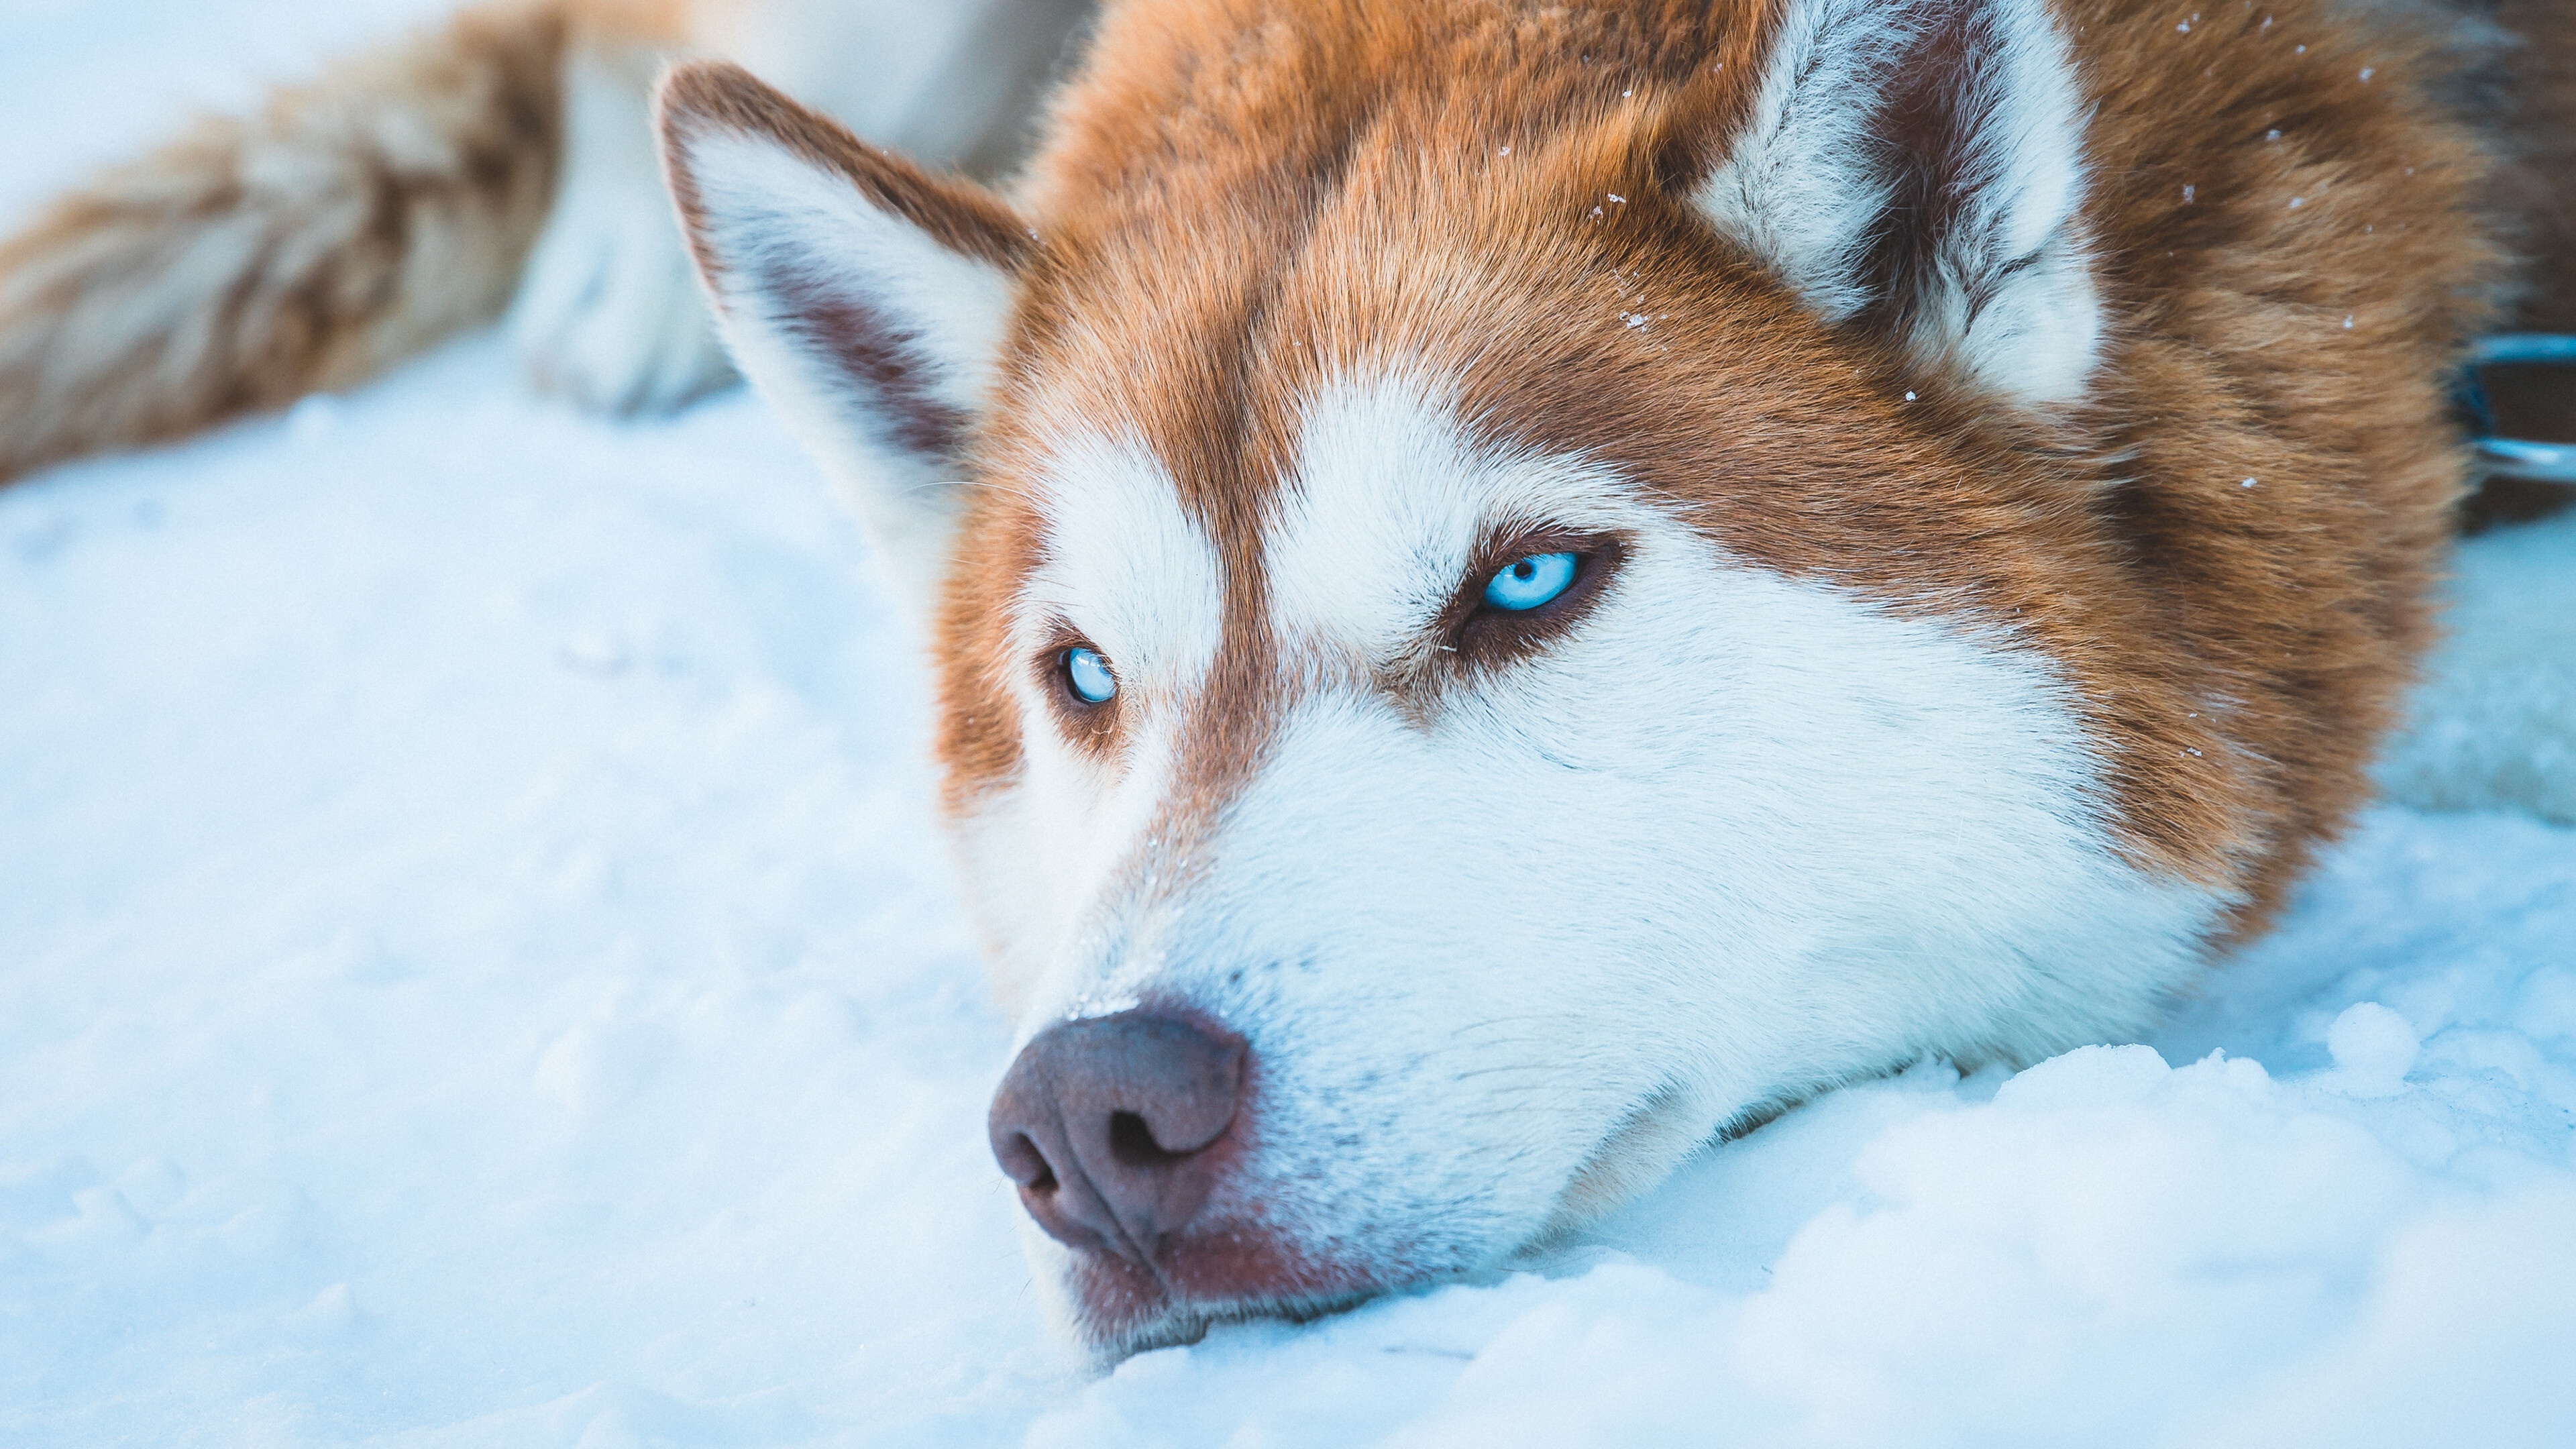 Husky 4K ultra HD, Dog in snow, Winter feeling, Wallhere, 3840x2160 4K Desktop